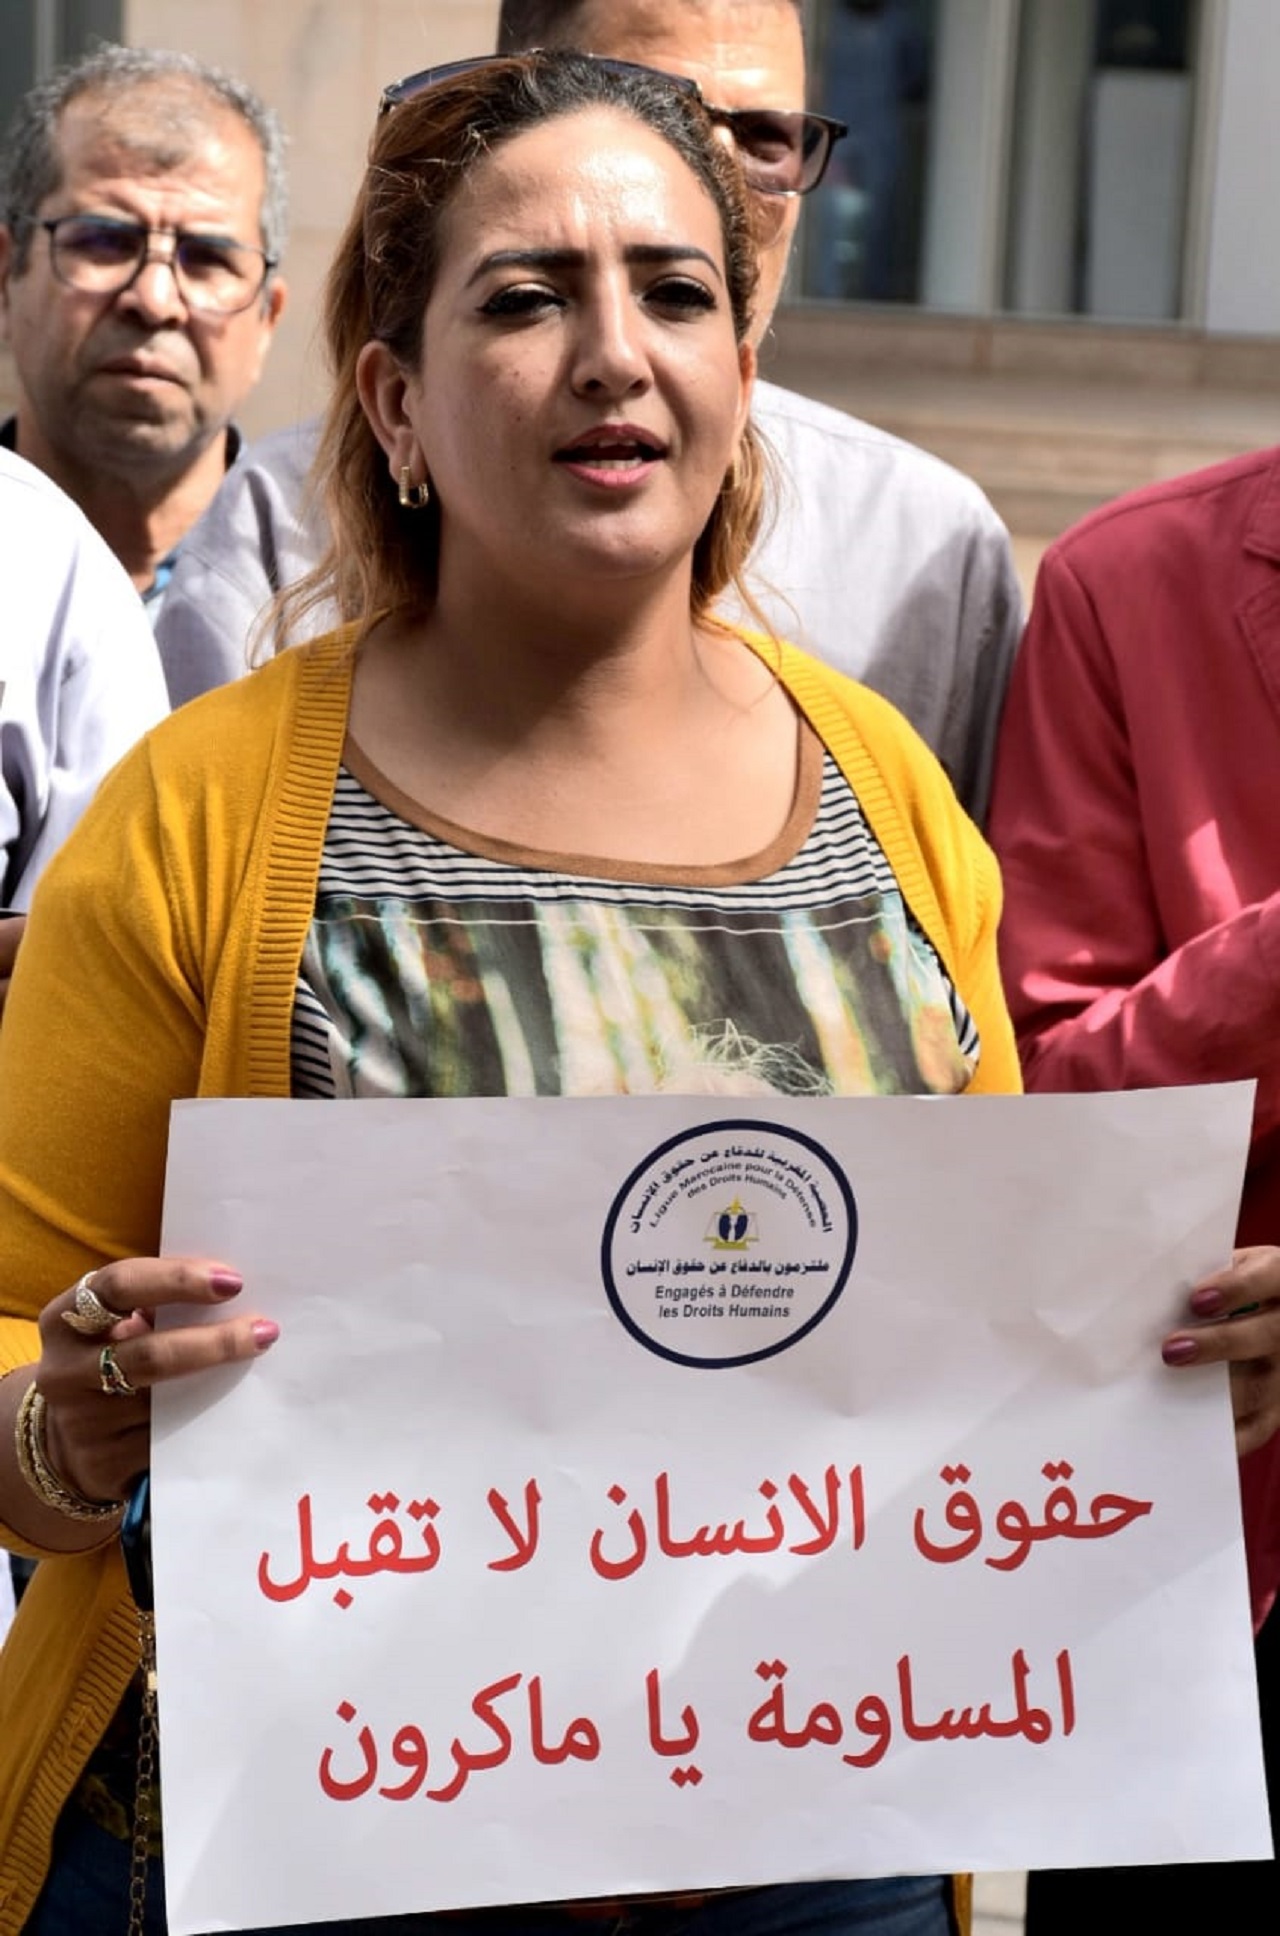 وقفة احتجاجية للعصبة المغربية للدفاع عن حقوق الإنسان أمام مقر بعثة الاتحاد الأوروبي